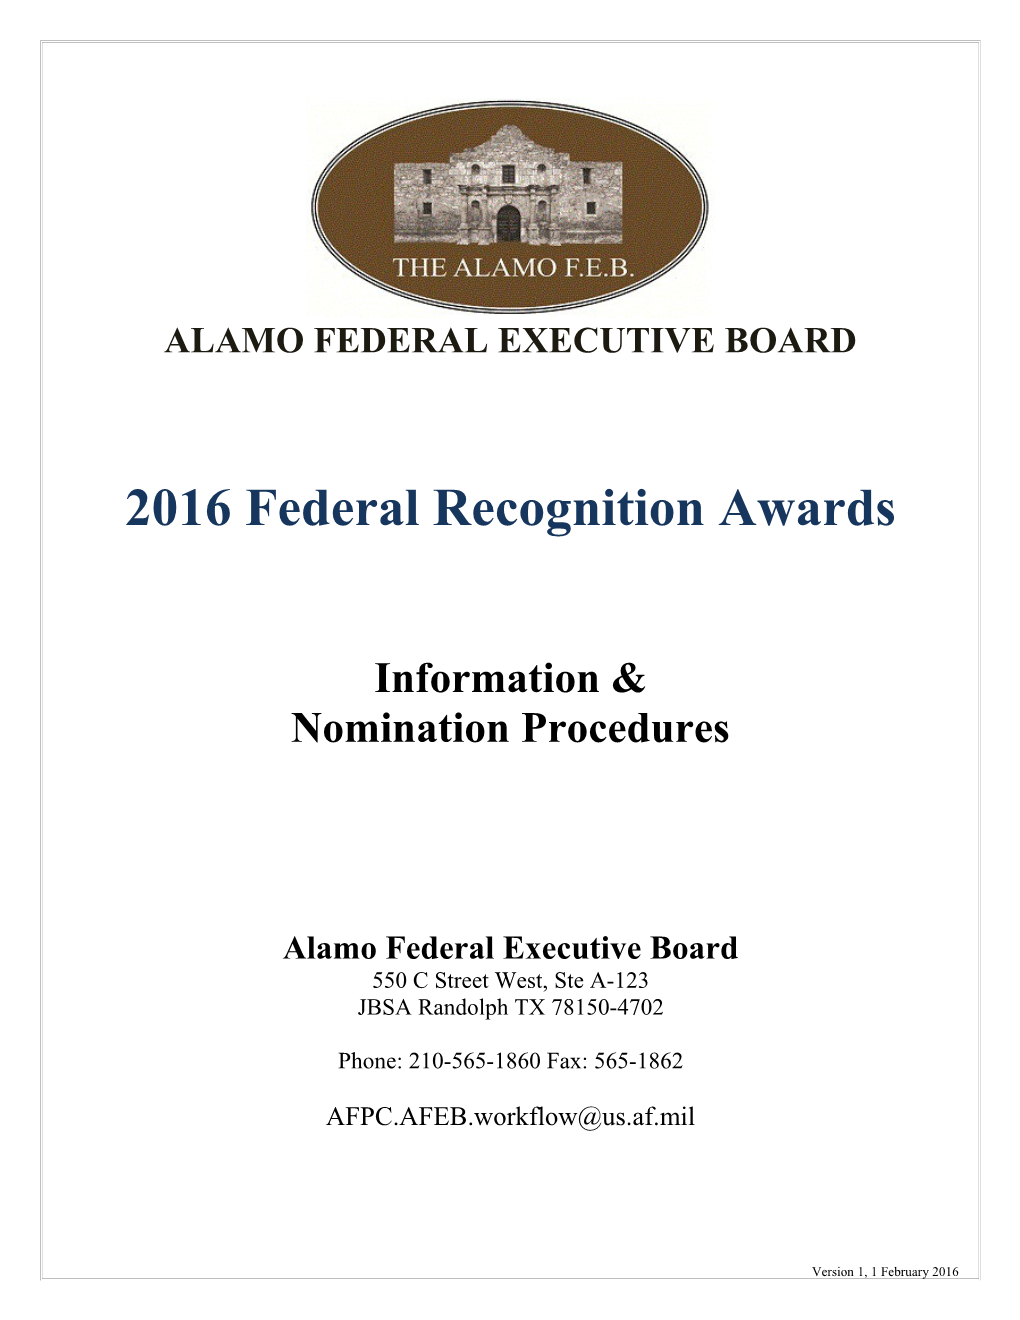 Alamo Federal Executive Board